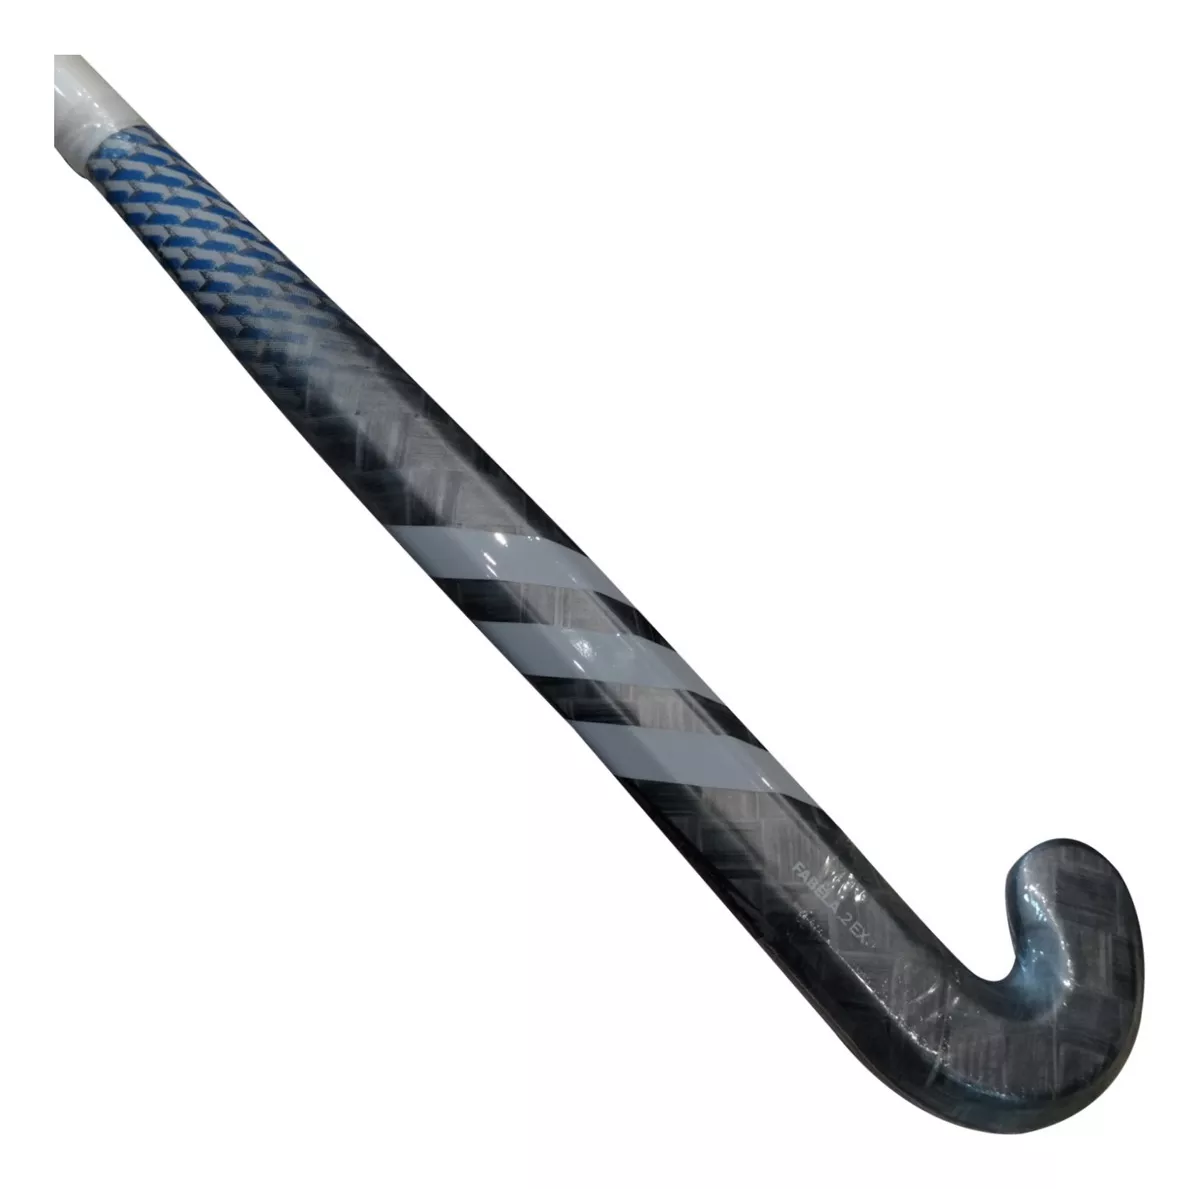 Segunda imagen para búsqueda de palos de hockey adidas carbono